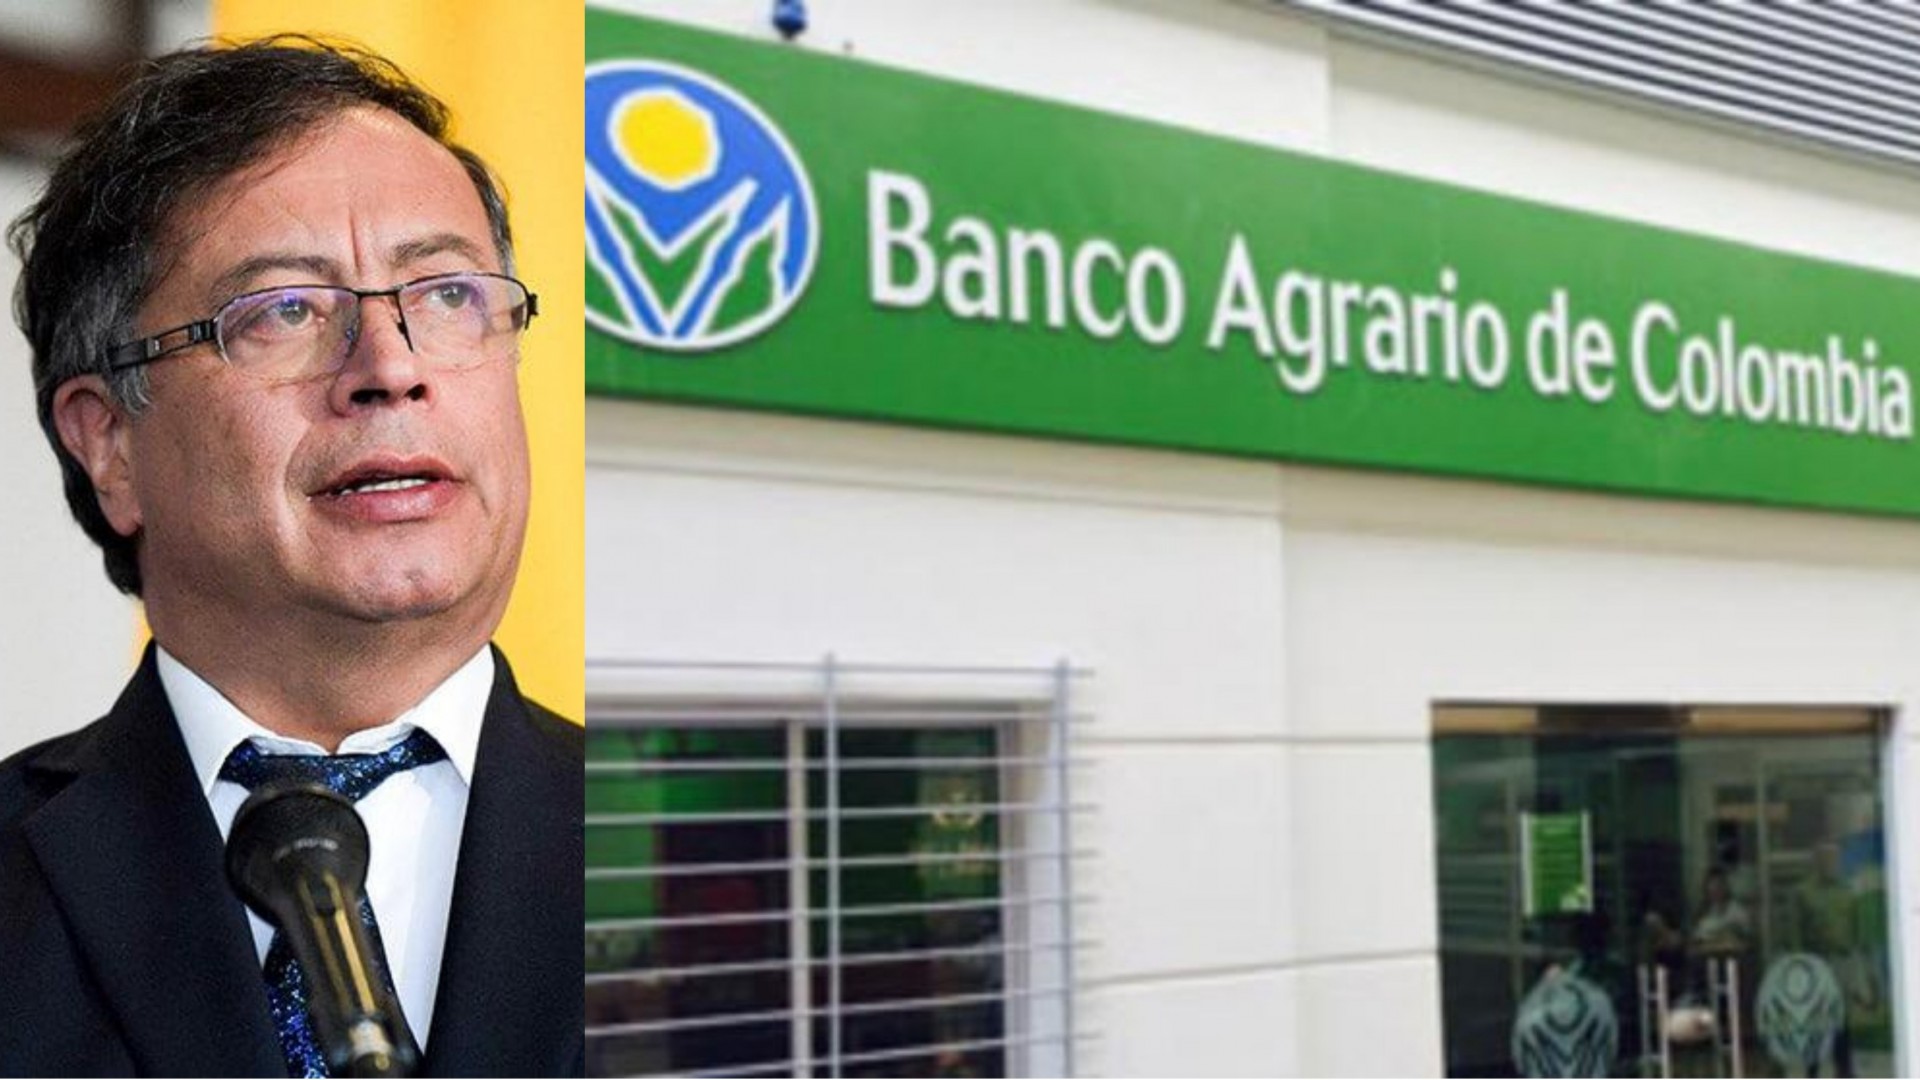 El Banco Agrario debe volver a ser el banco más grande de Colombia”: Petro | El Cronista